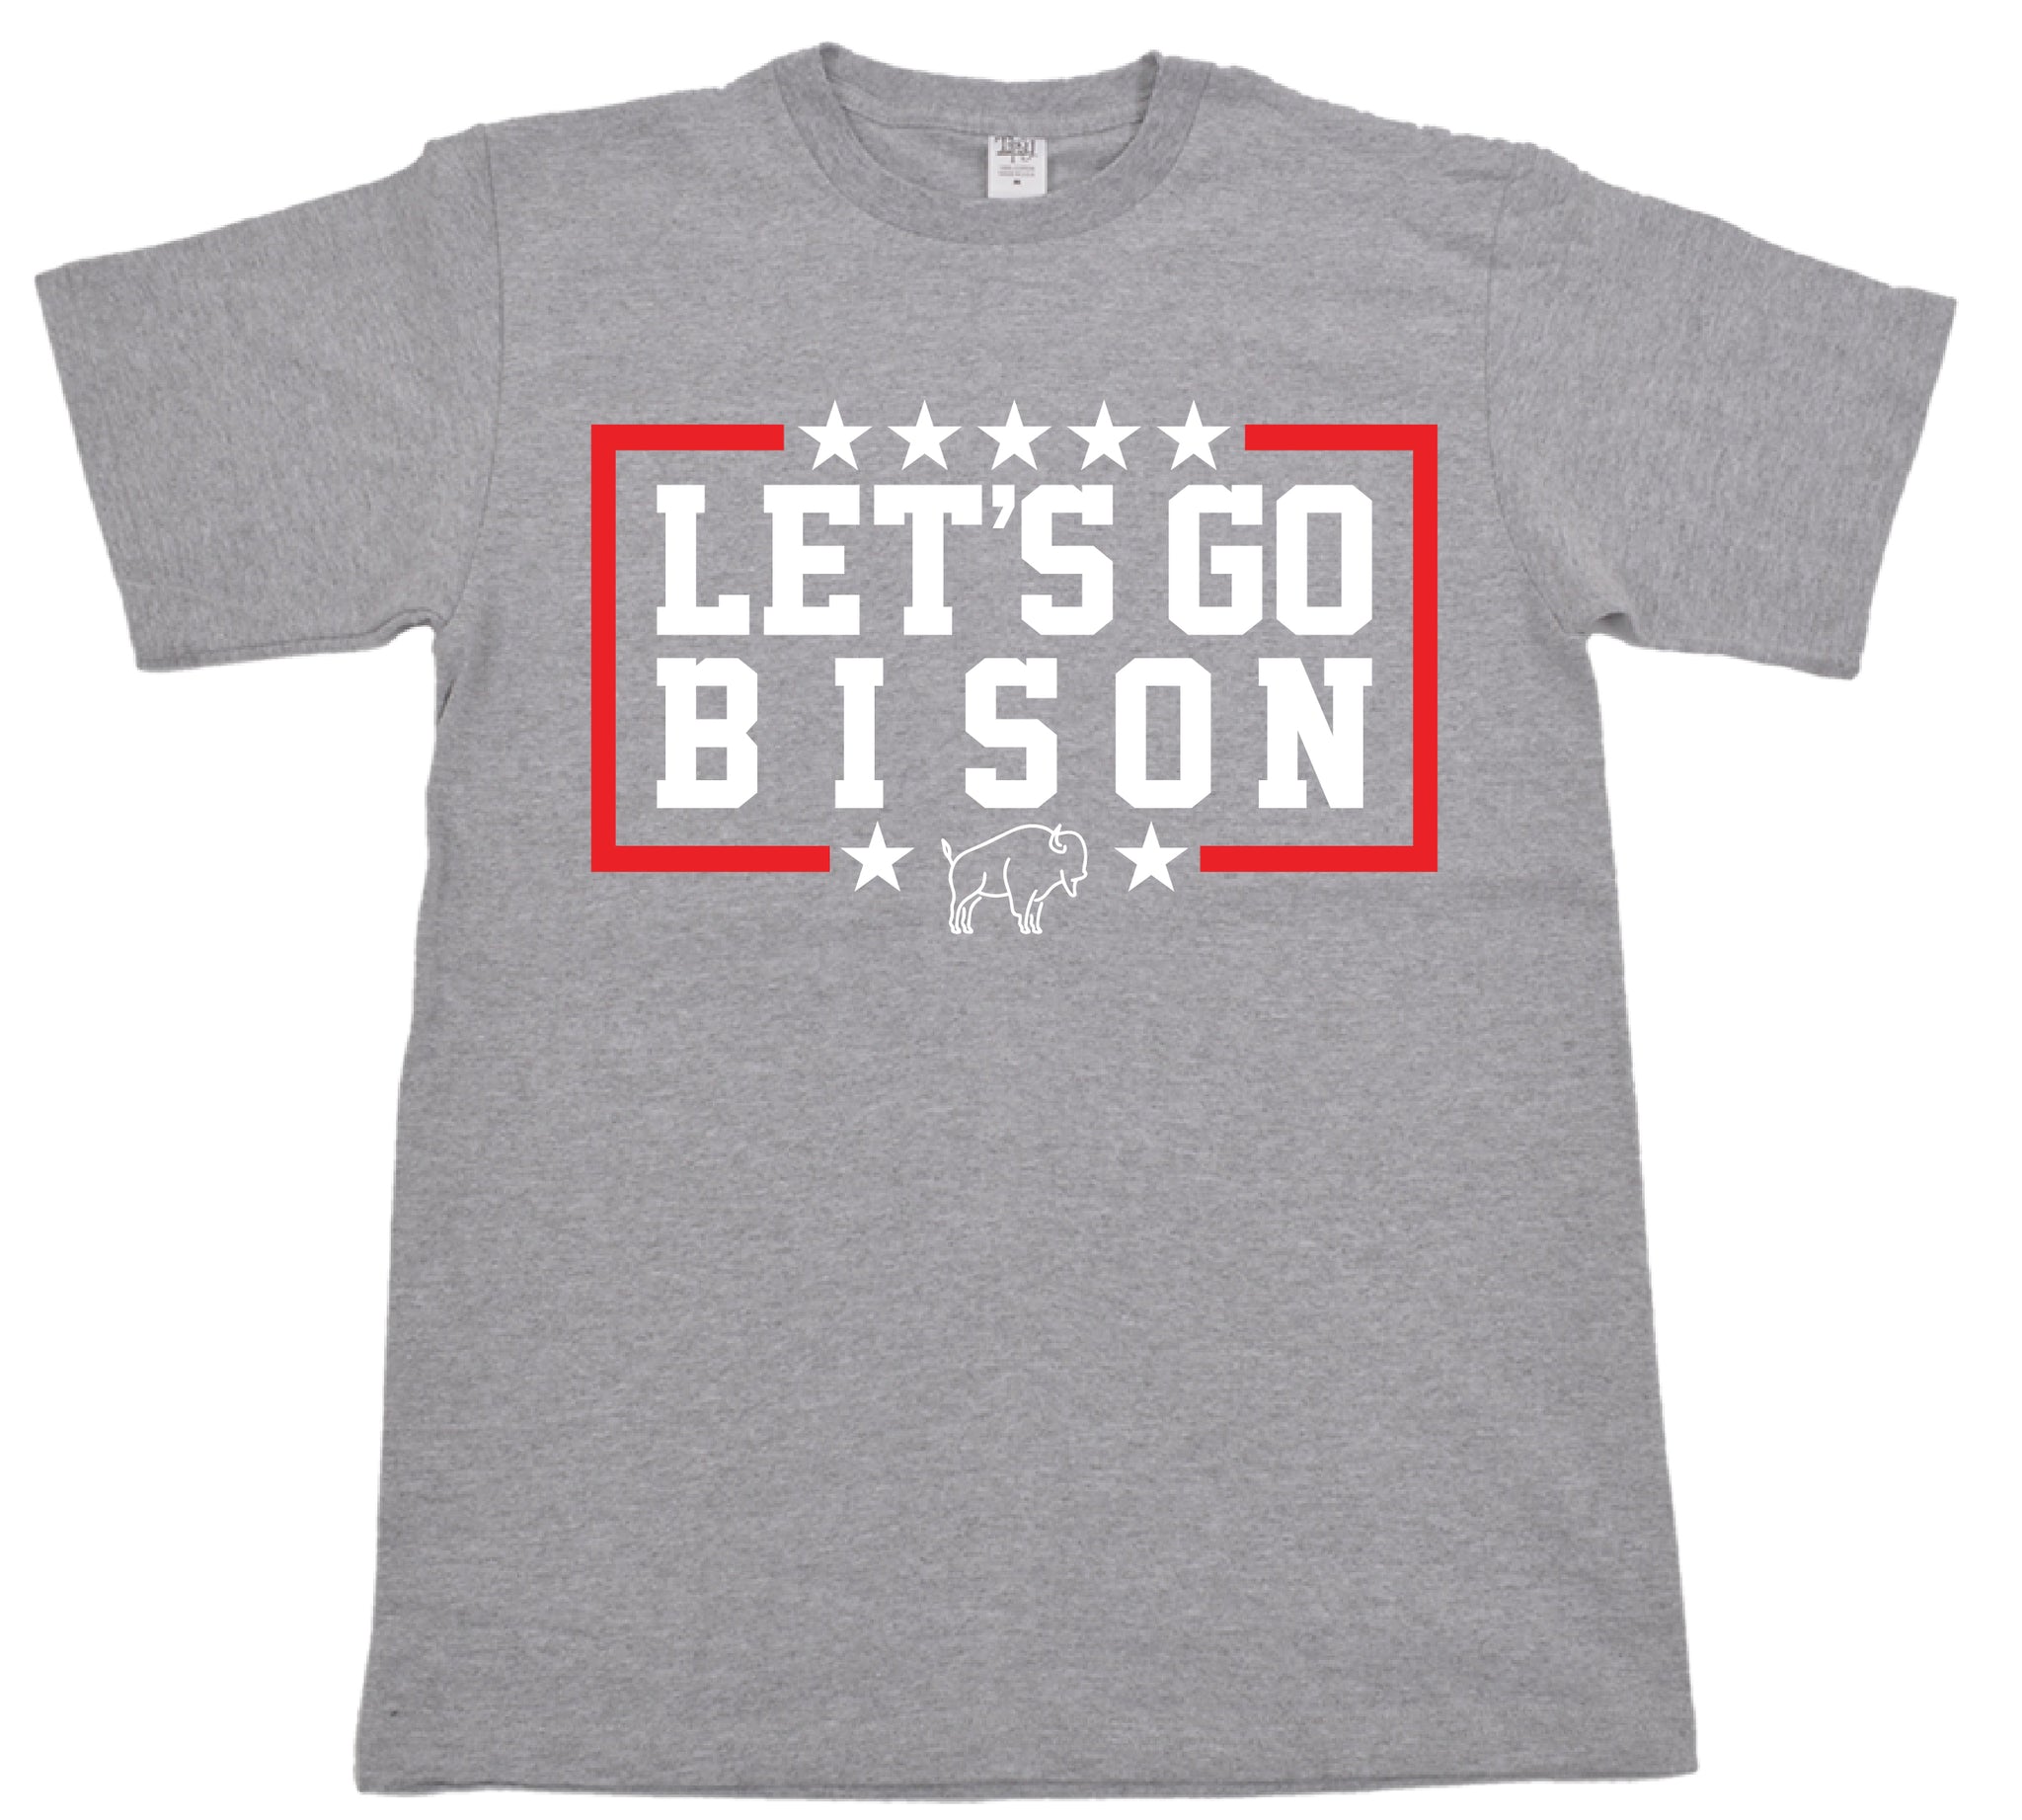 Let's Go Bison T-Shirt - MADISON GIFT SHOP